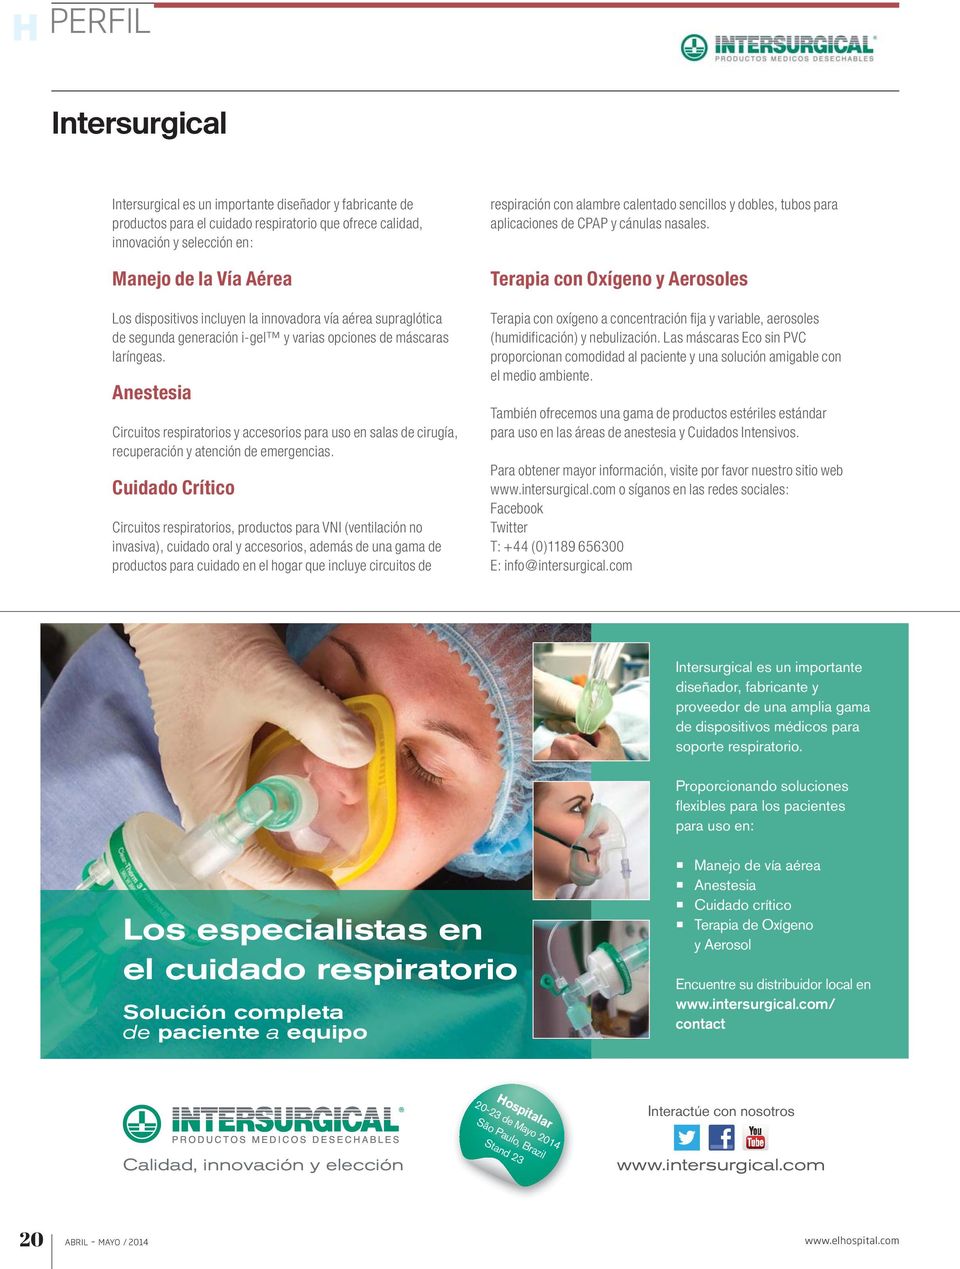 Anestesia Circuitos respiratorios y accesorios para uso en salas de cirugía, recuperación y atención de emergencias.